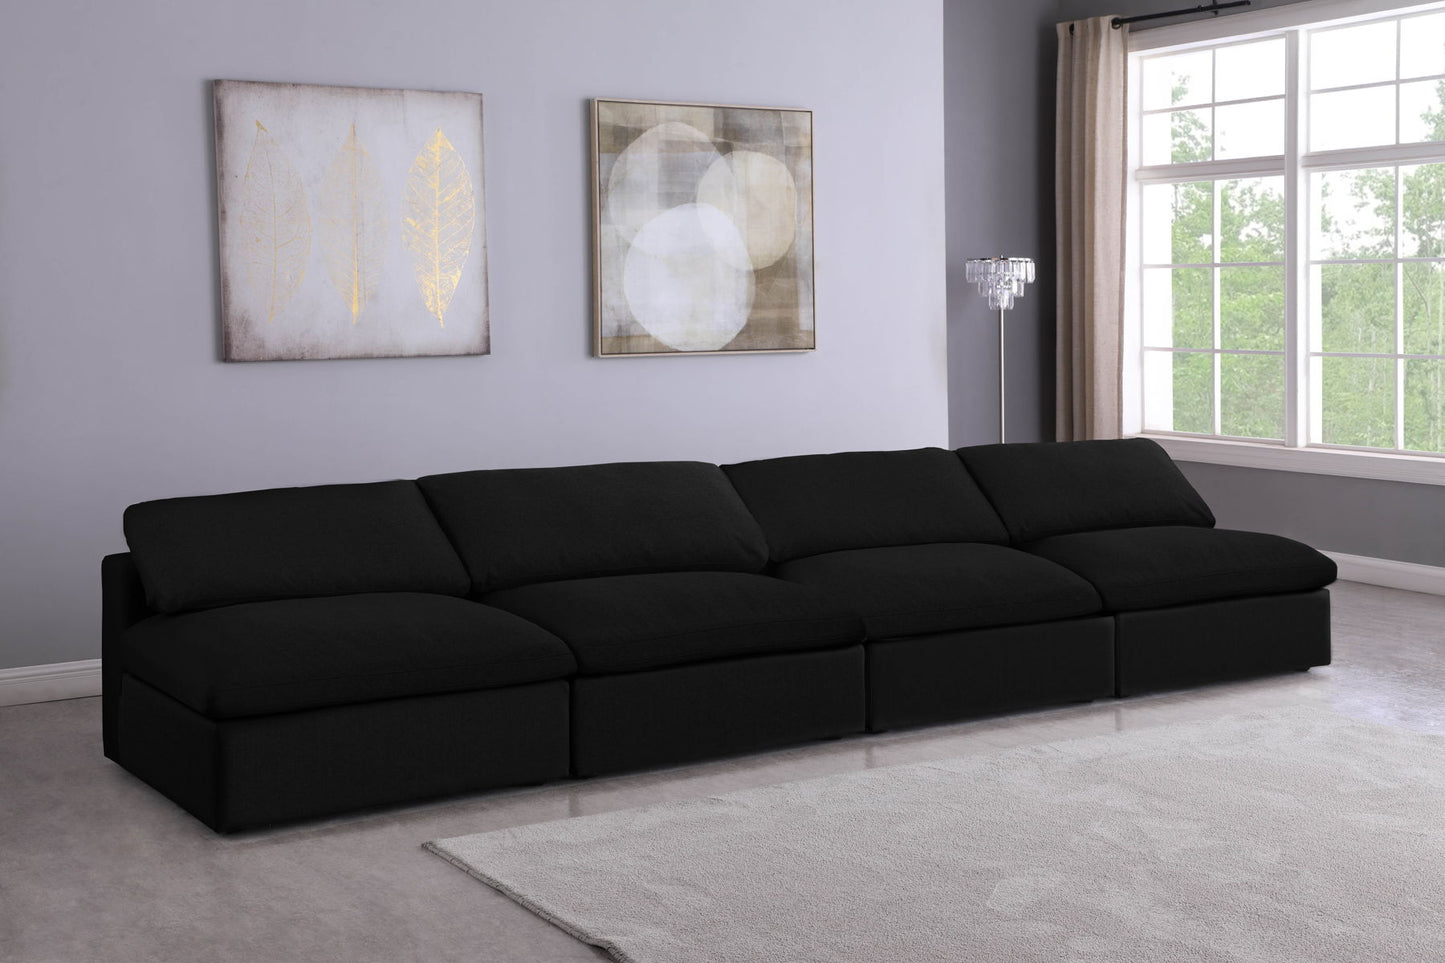 Serene - Modular Armless 4 Seat Sofa